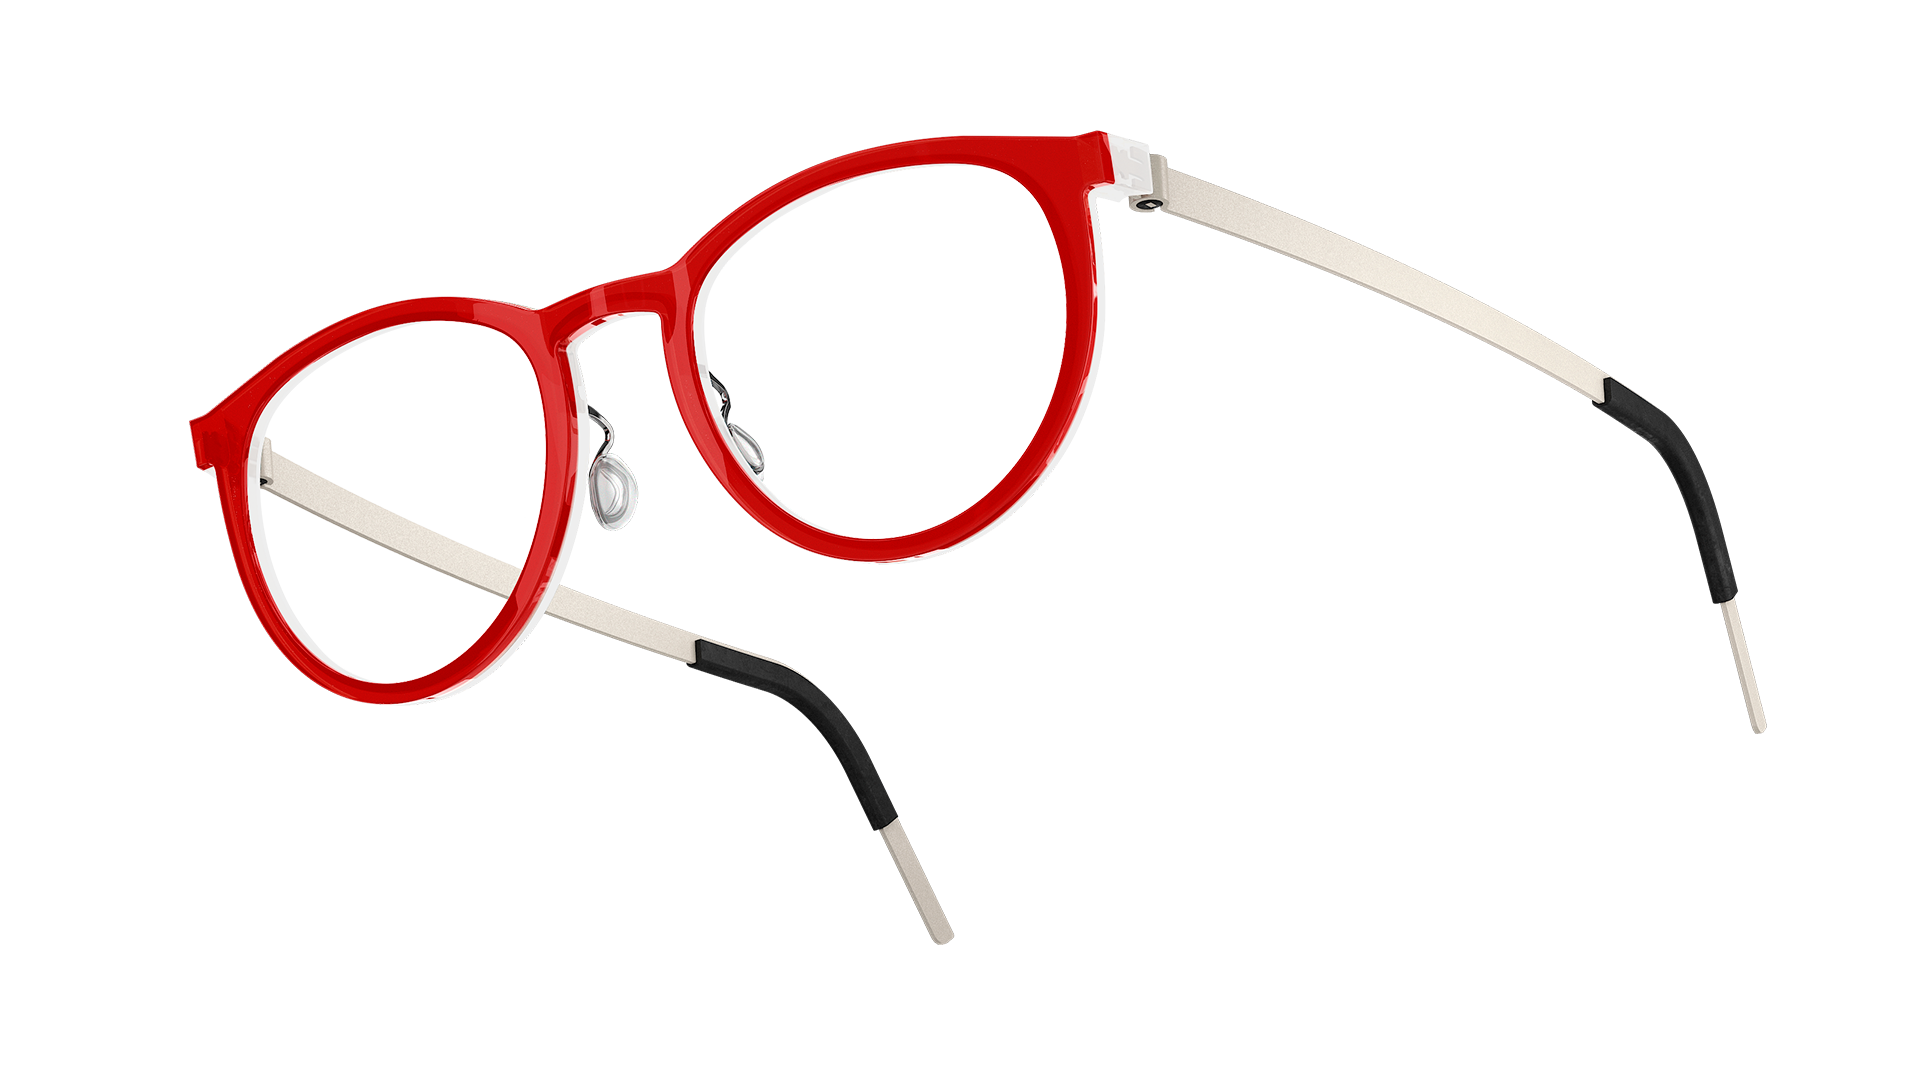 LINDBERG acetanium, Modell 1505, Kinderbrille mit Acetat-Fassung in Transparent-Rot AI08 und Titanbügeln in Weiß U38